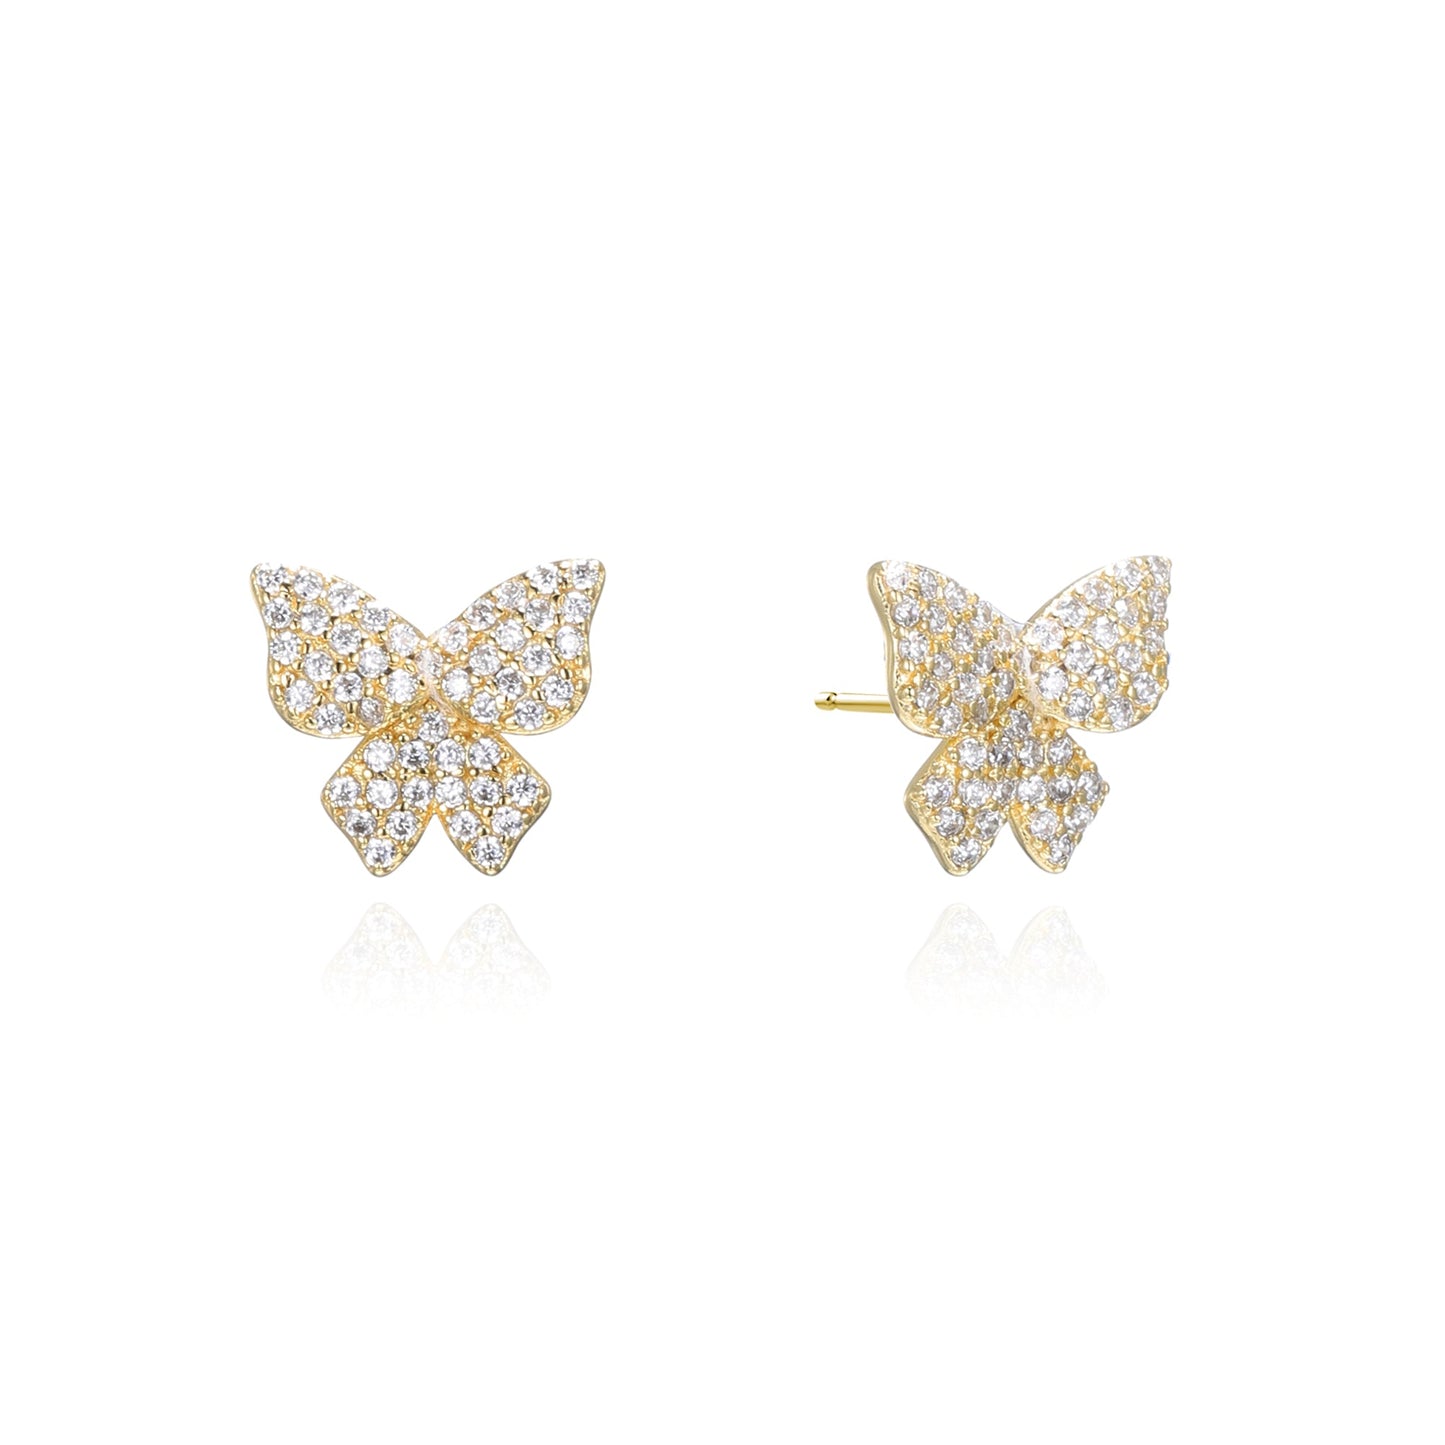 Silver CZ Butterfly Stud Earrings